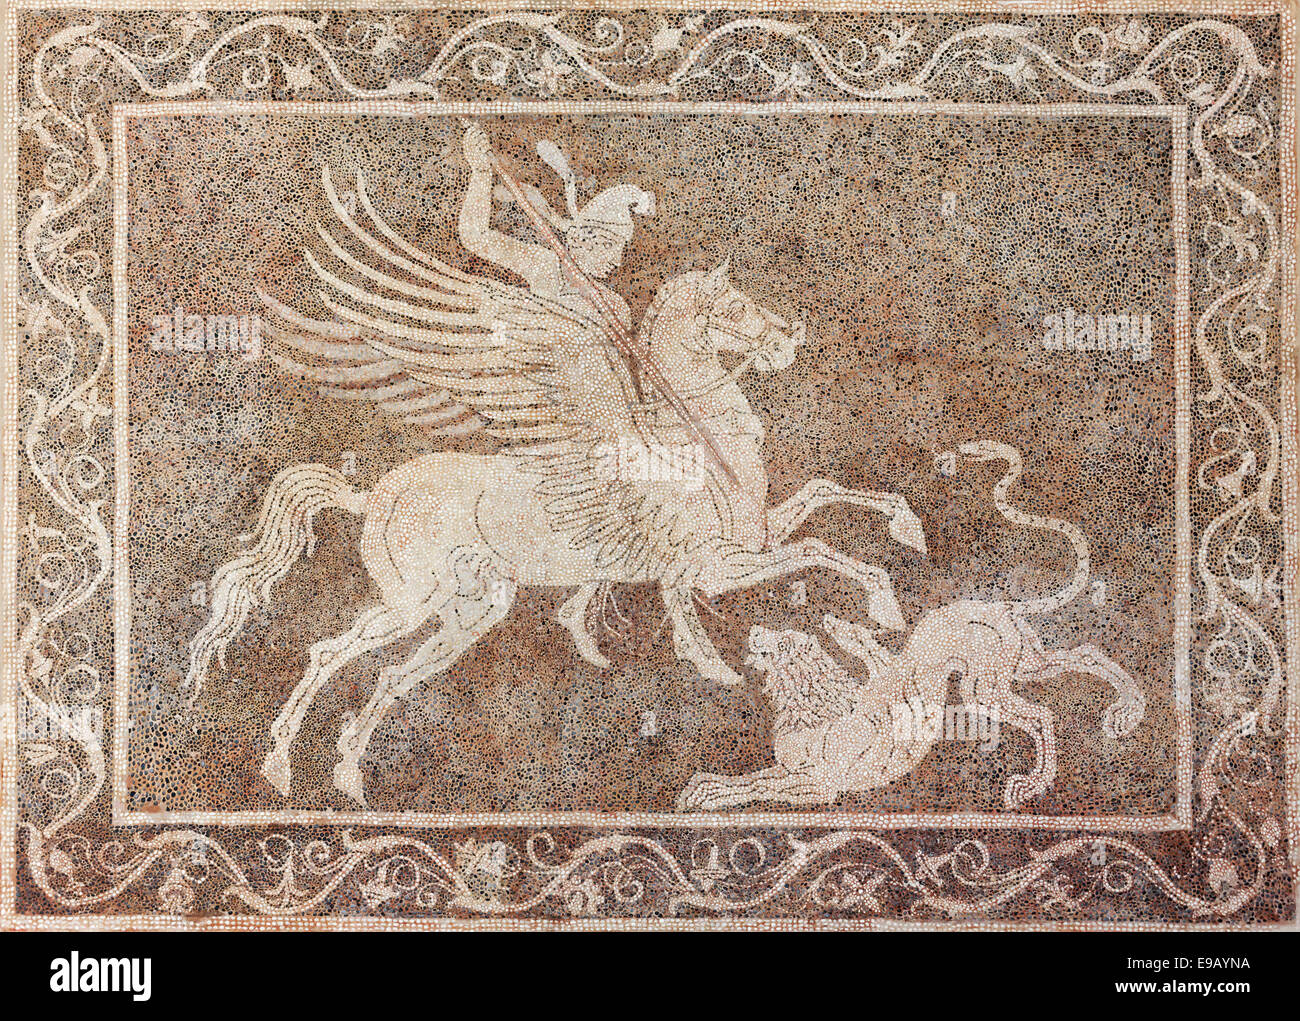 Jinete sobre un caballo alado cazando un león, suelo de mosaico de guijarros, Chochlaki, el Museo Arqueológico, el centro histórico de la ciudad Foto de stock